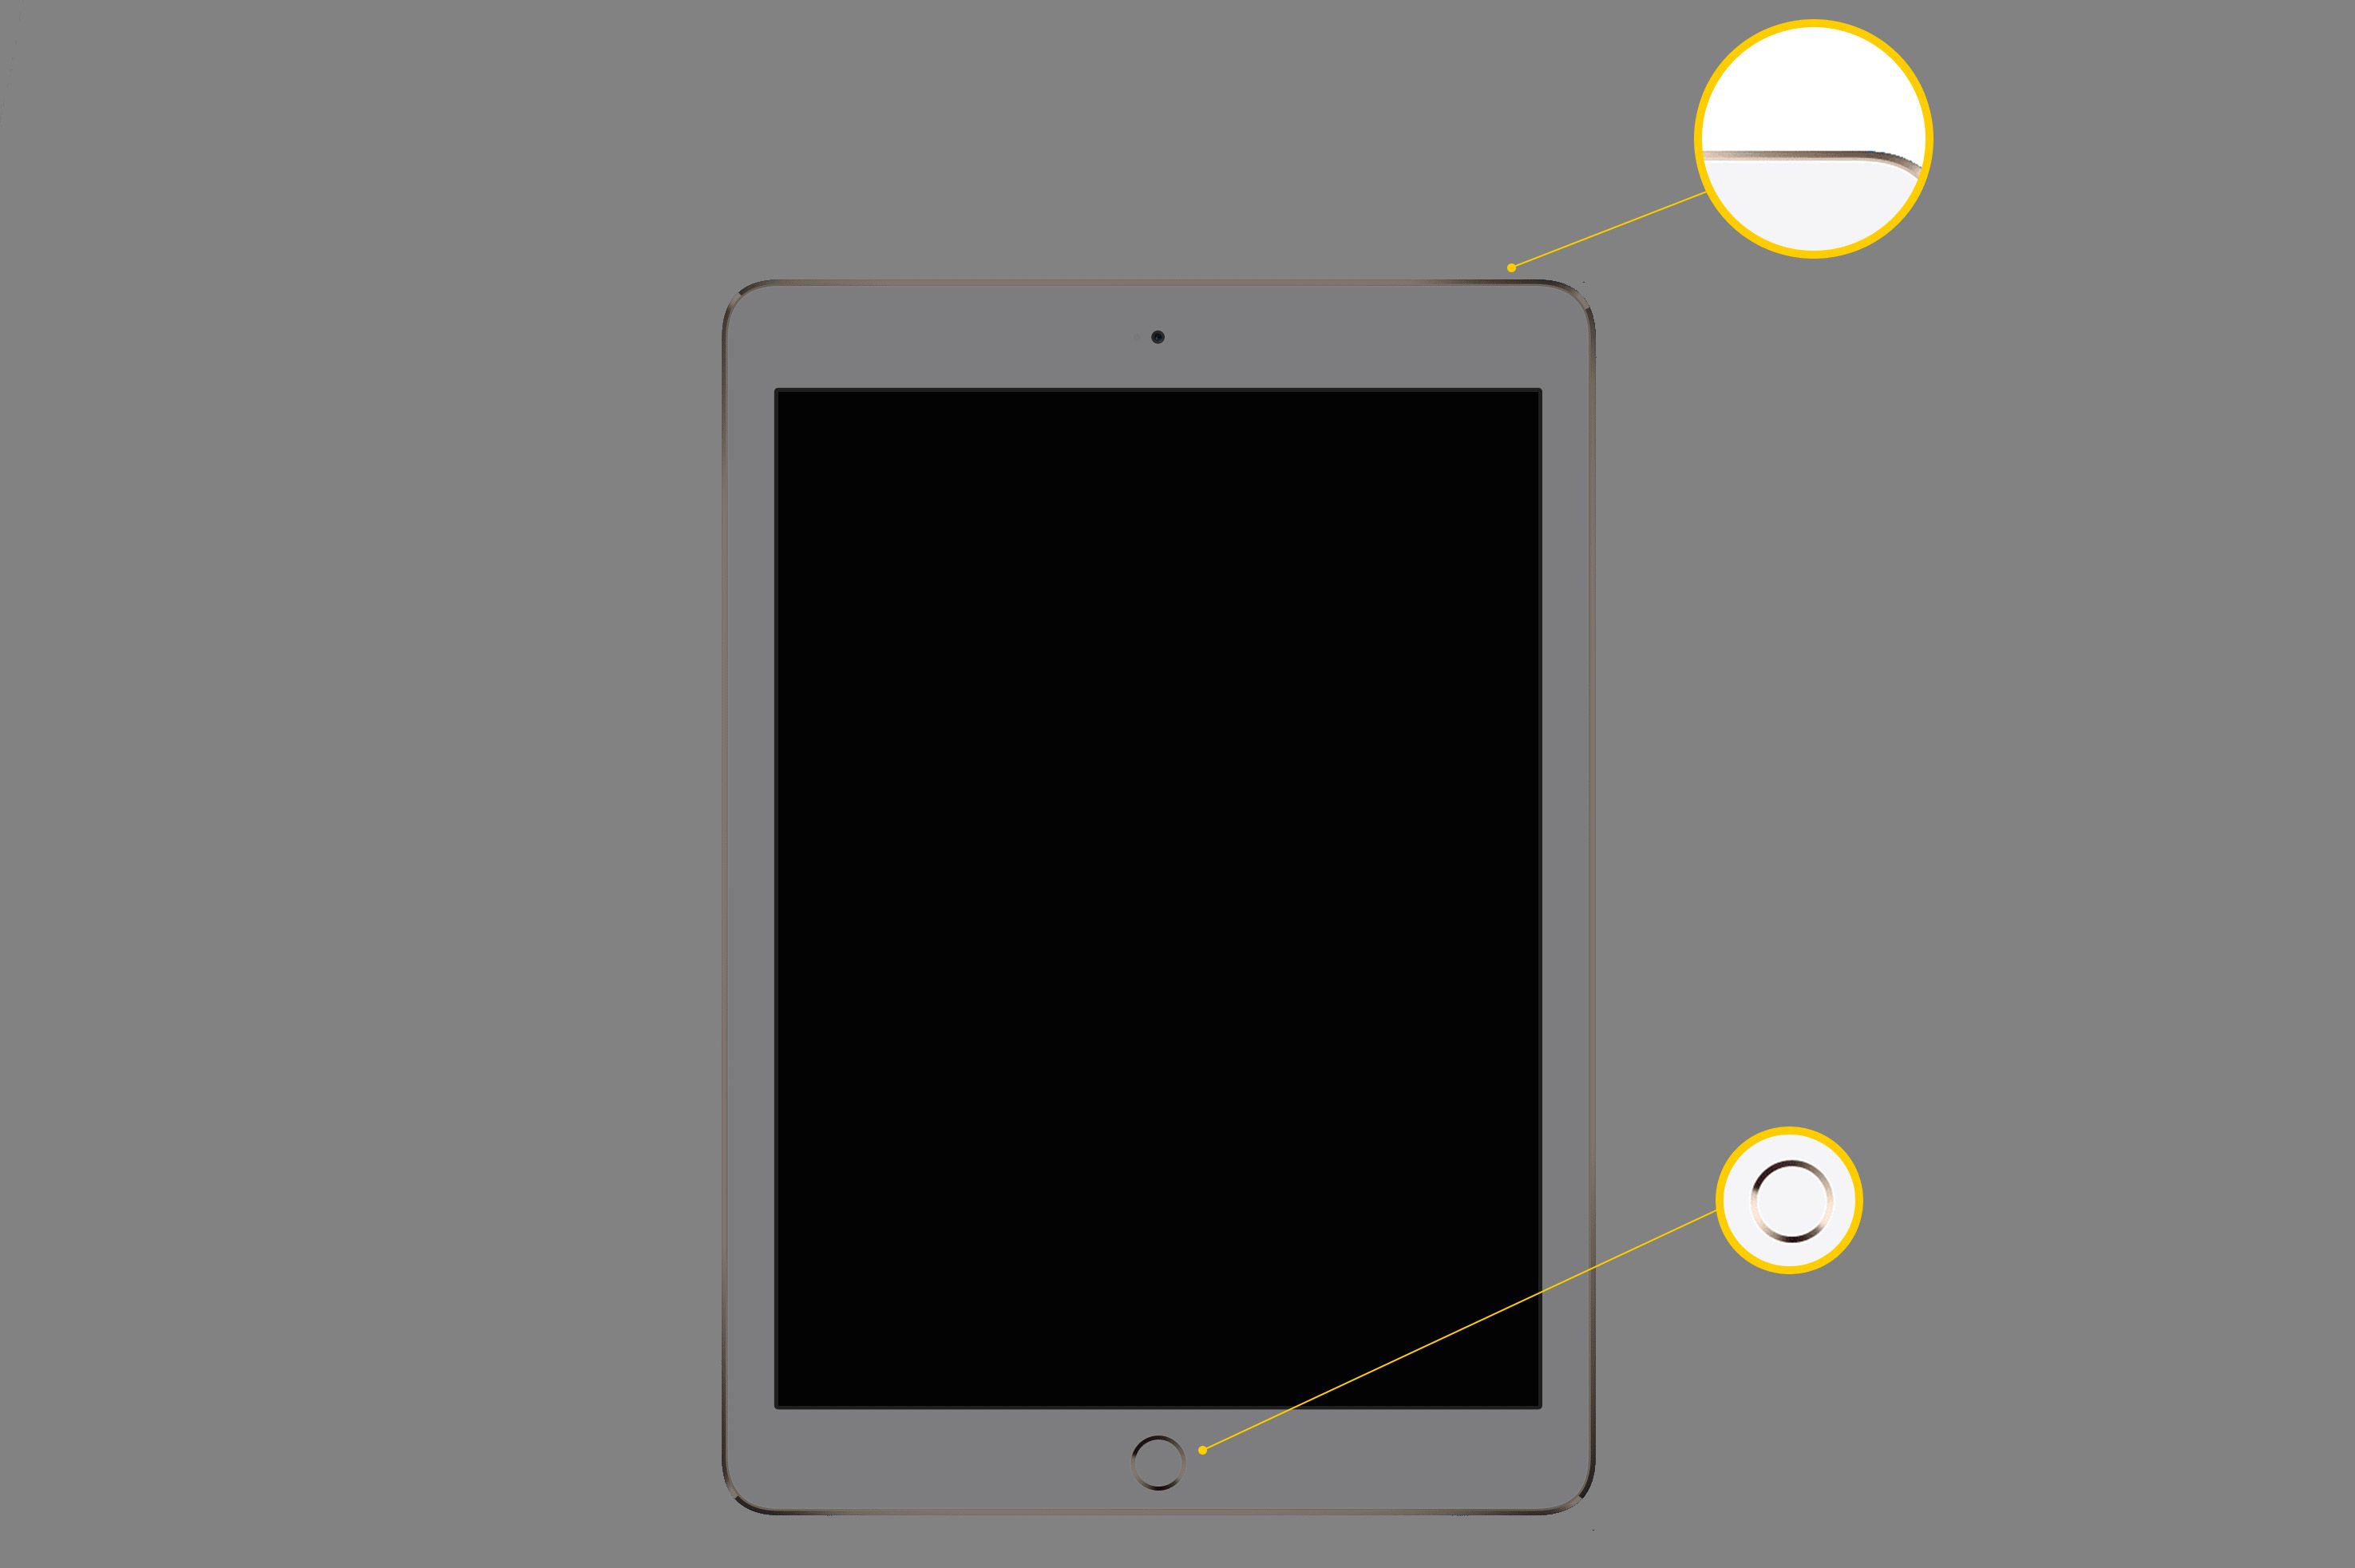 iPad met scherm naar voren gericht, met de nadruk op de Sleep/Wake-knop in de rechterbovenhoek van het apparaat en de Home-knop in het midden onderaan